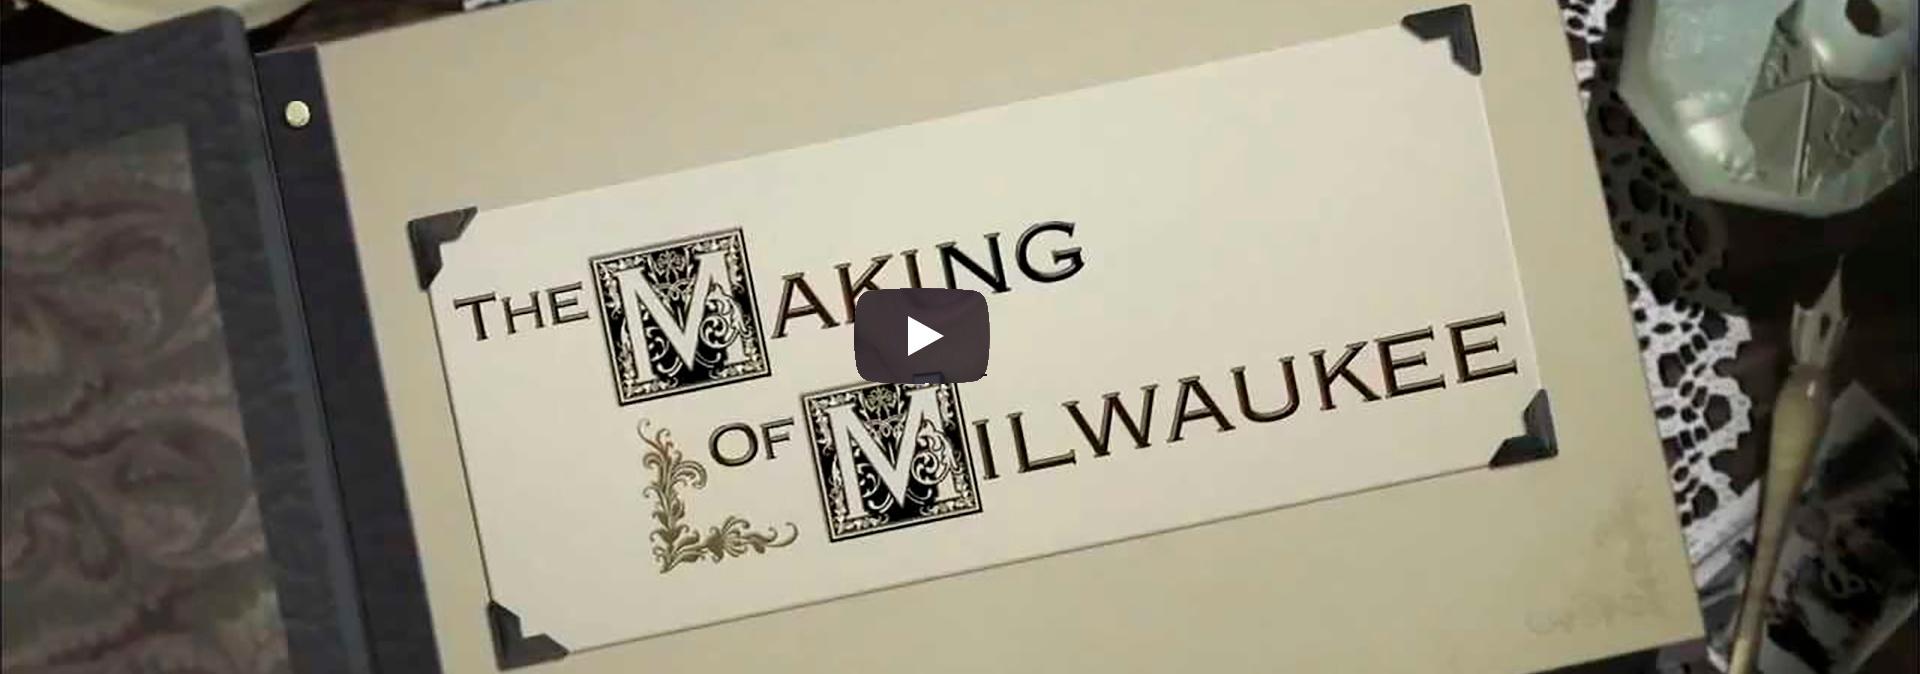 Making of Milwaukee